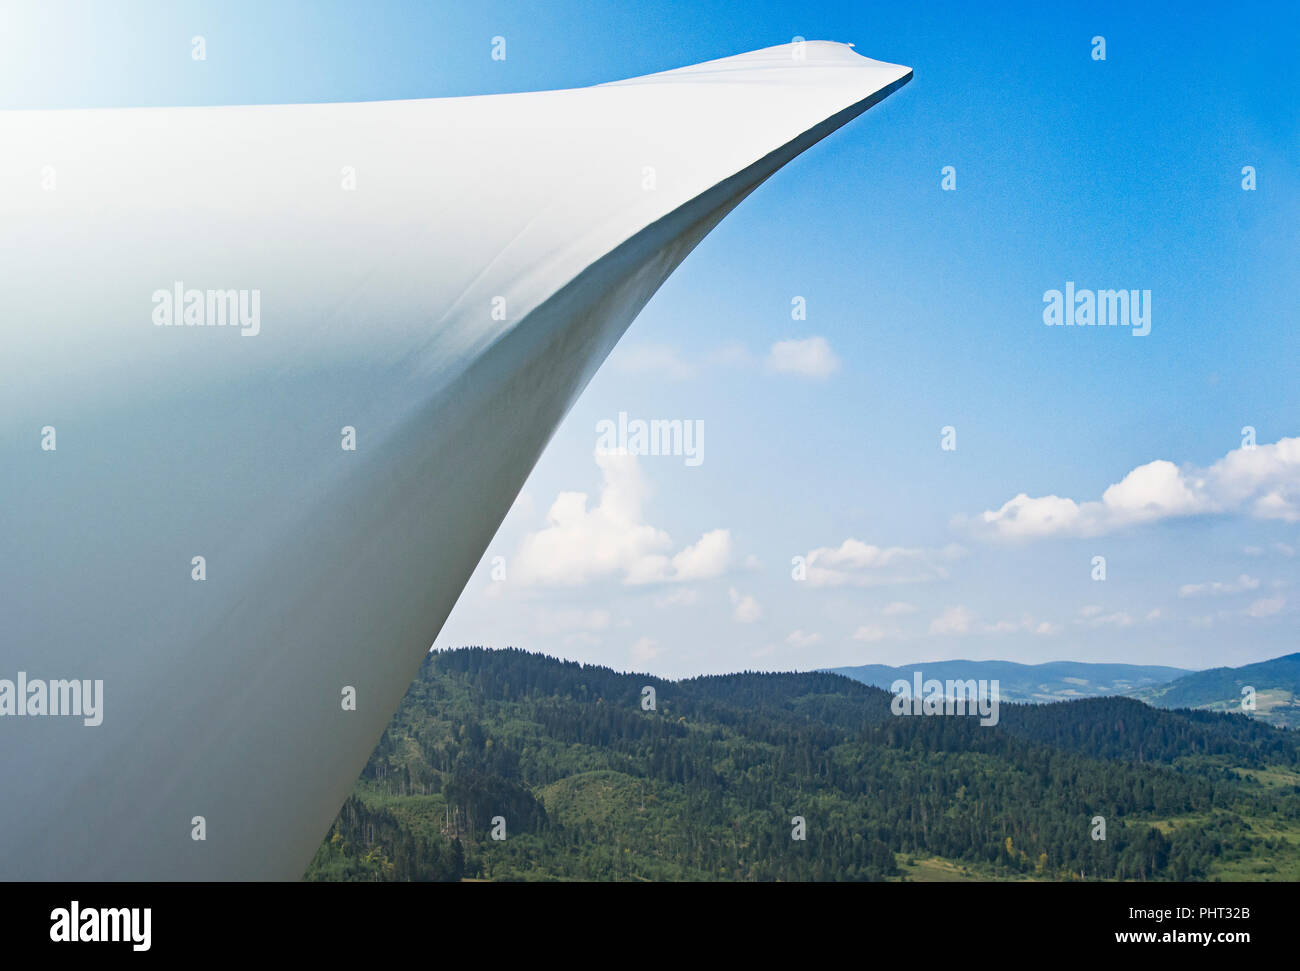 Vue aérienne de l'éolienne - développement durable, environnement, concept d'énergie renouvelable. Banque D'Images